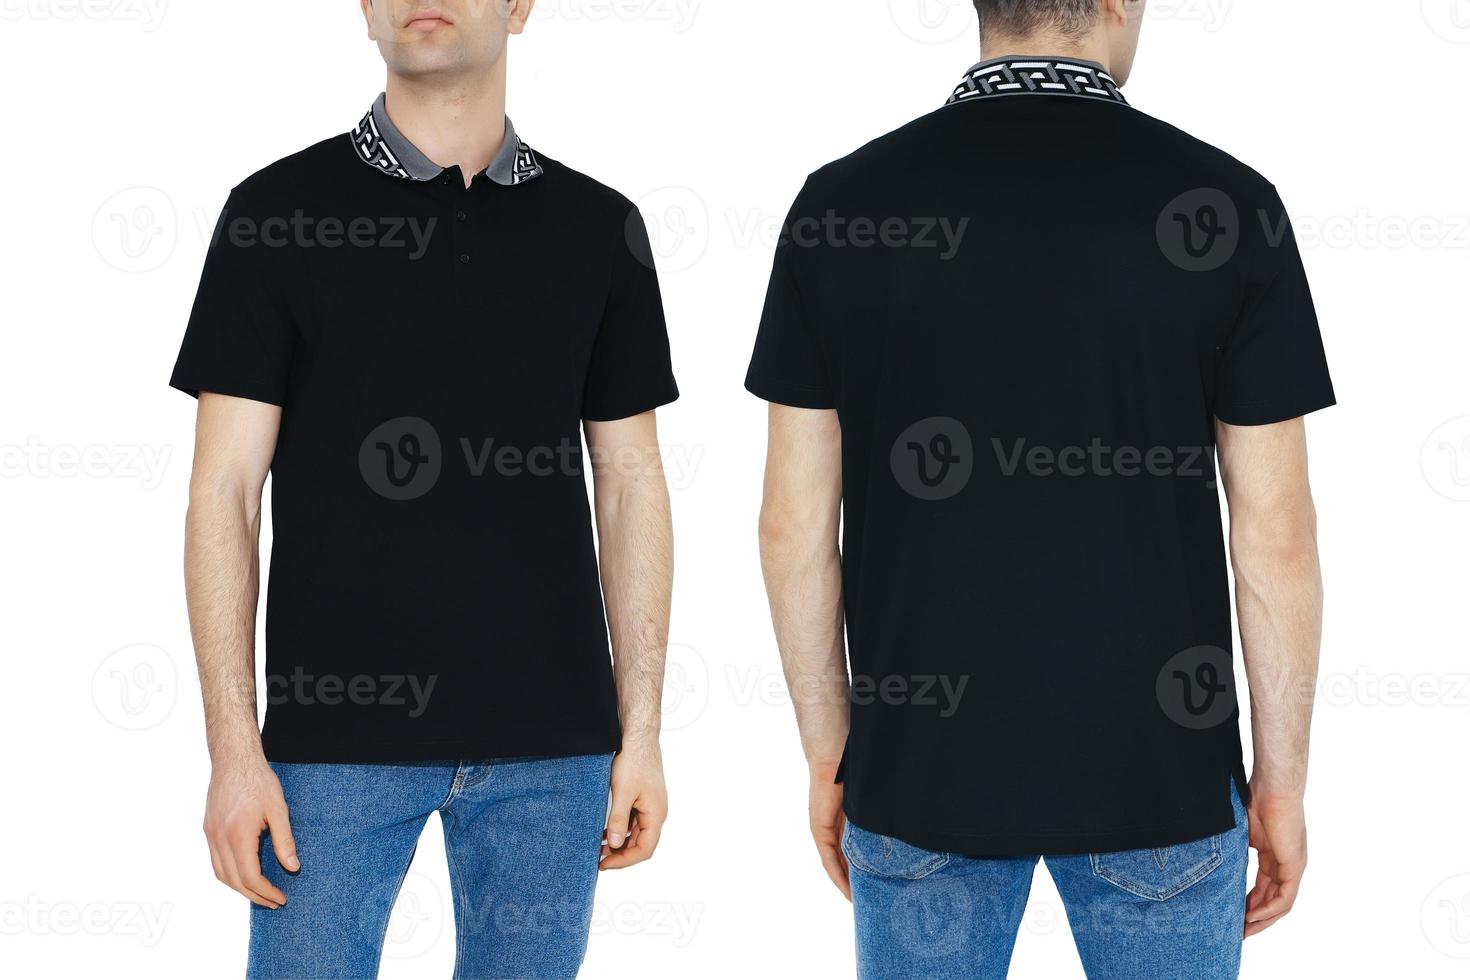 twee kant van zwart t-shirts met kopiëren ruimte foto